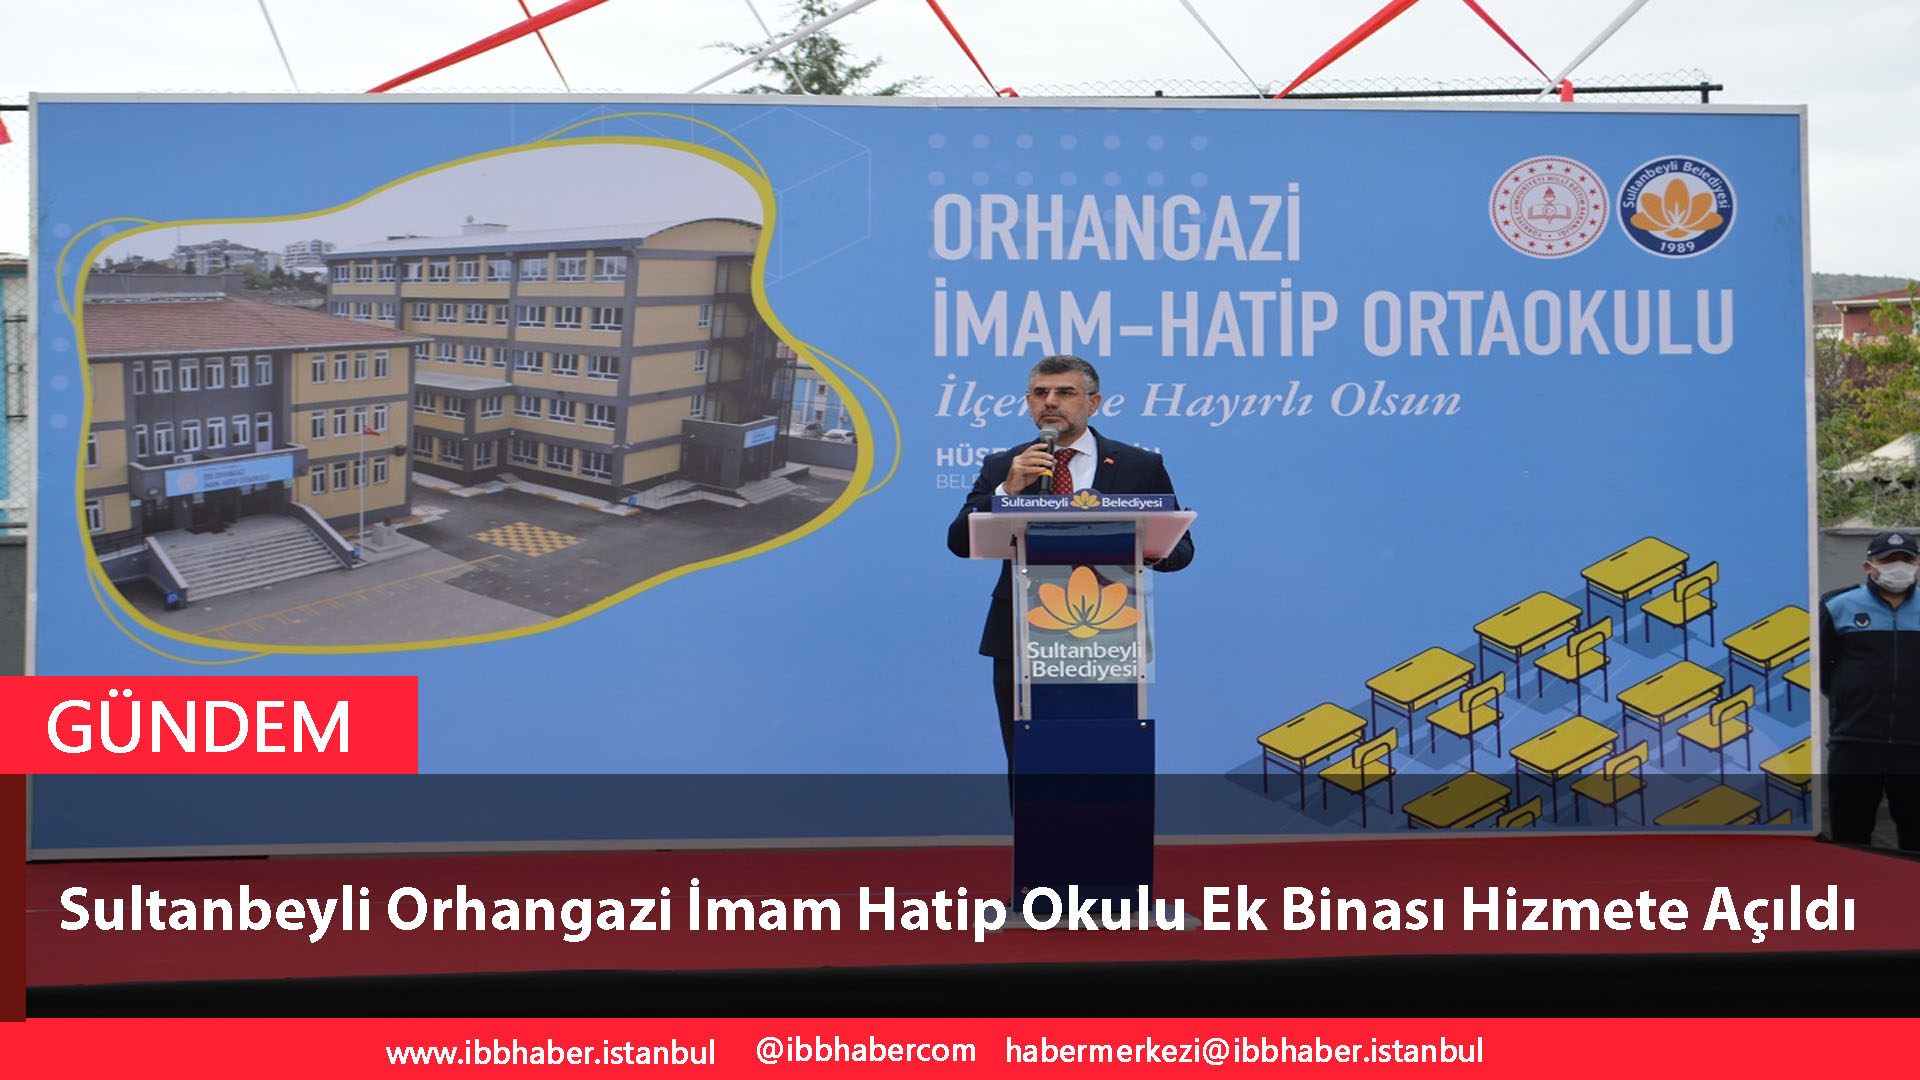 Sultanbeyli Orhangazi İmam Hatip Okulu Ek Binası Hizmete Açıldı